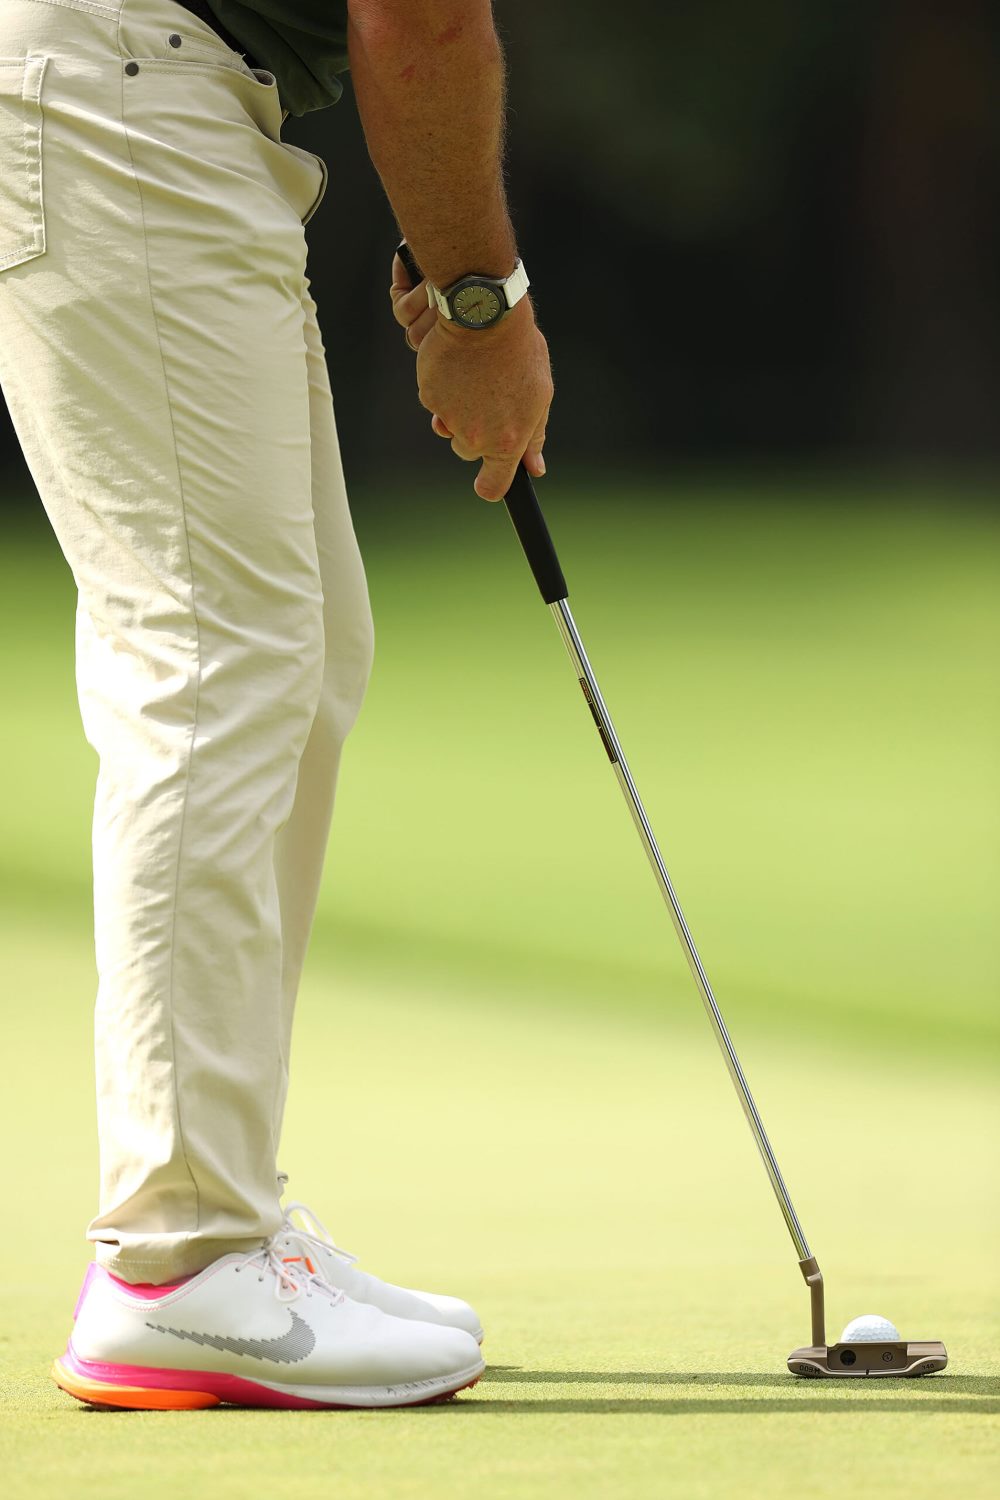 Lợi ích và cân nhắc của việc đeo đồng hồ khi chơi Golf